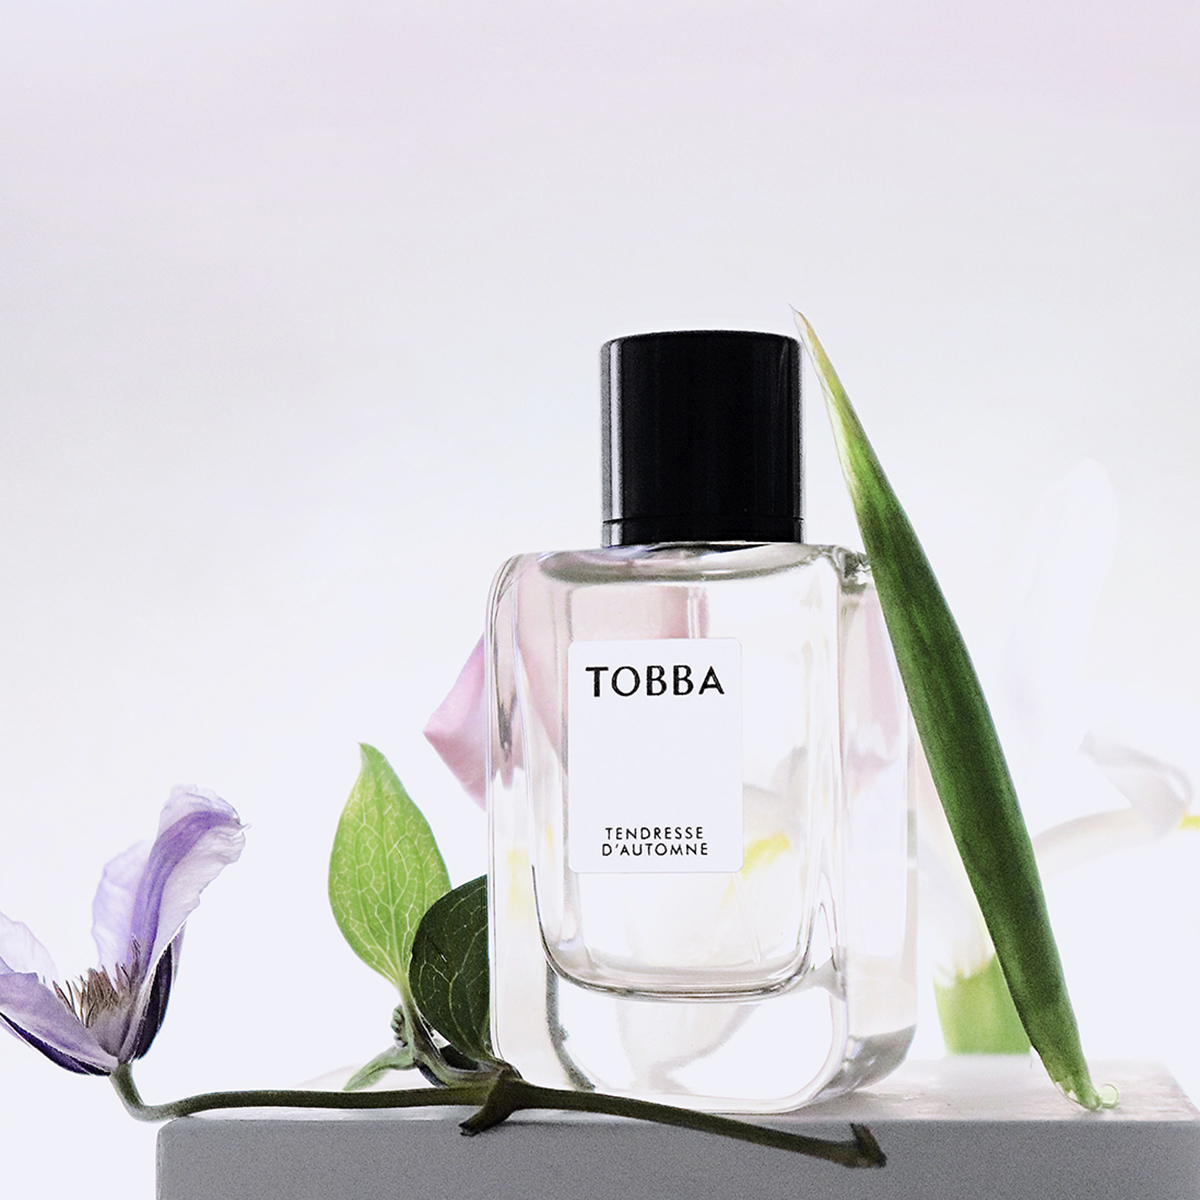 TOBBA - Tendresse D'automne Eau de parfum